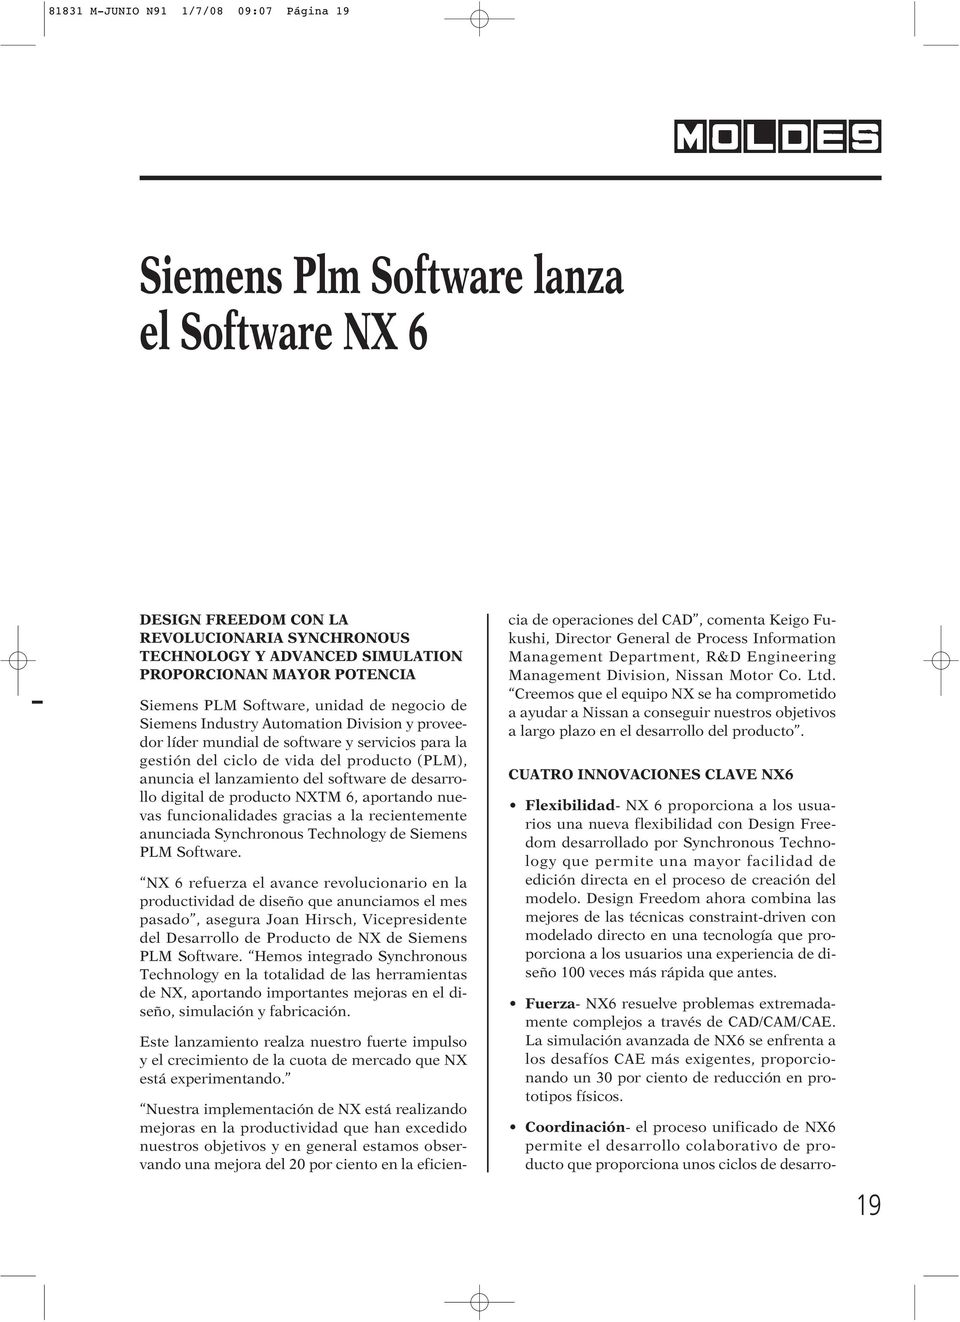 lanzamiento del software de desarrollo digital de producto NXTM 6, aportando nuevas funcionalidades gracias a la recientemente anunciada Synchronous Technology de Siemens PLM Software.